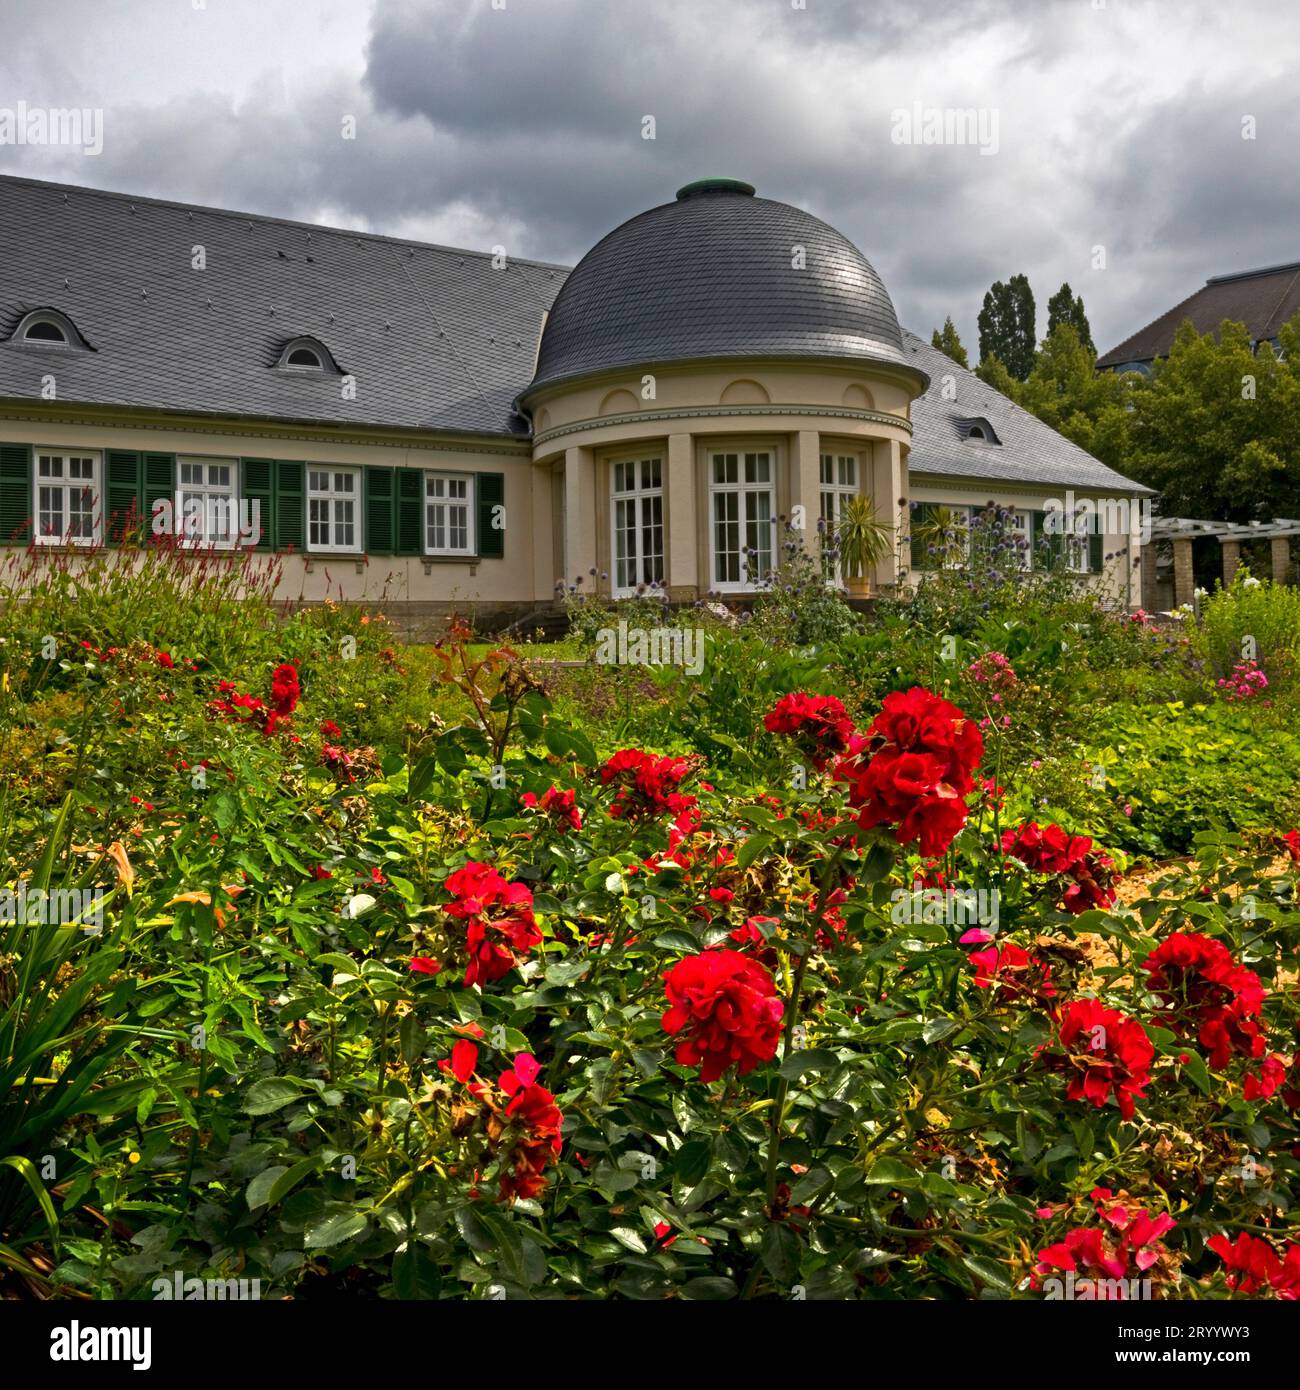 Roseraie, jardin du palais dans le parc thermal, Bad Pyrmont, Basse-Saxe, Allemagne, Europe Banque D'Images